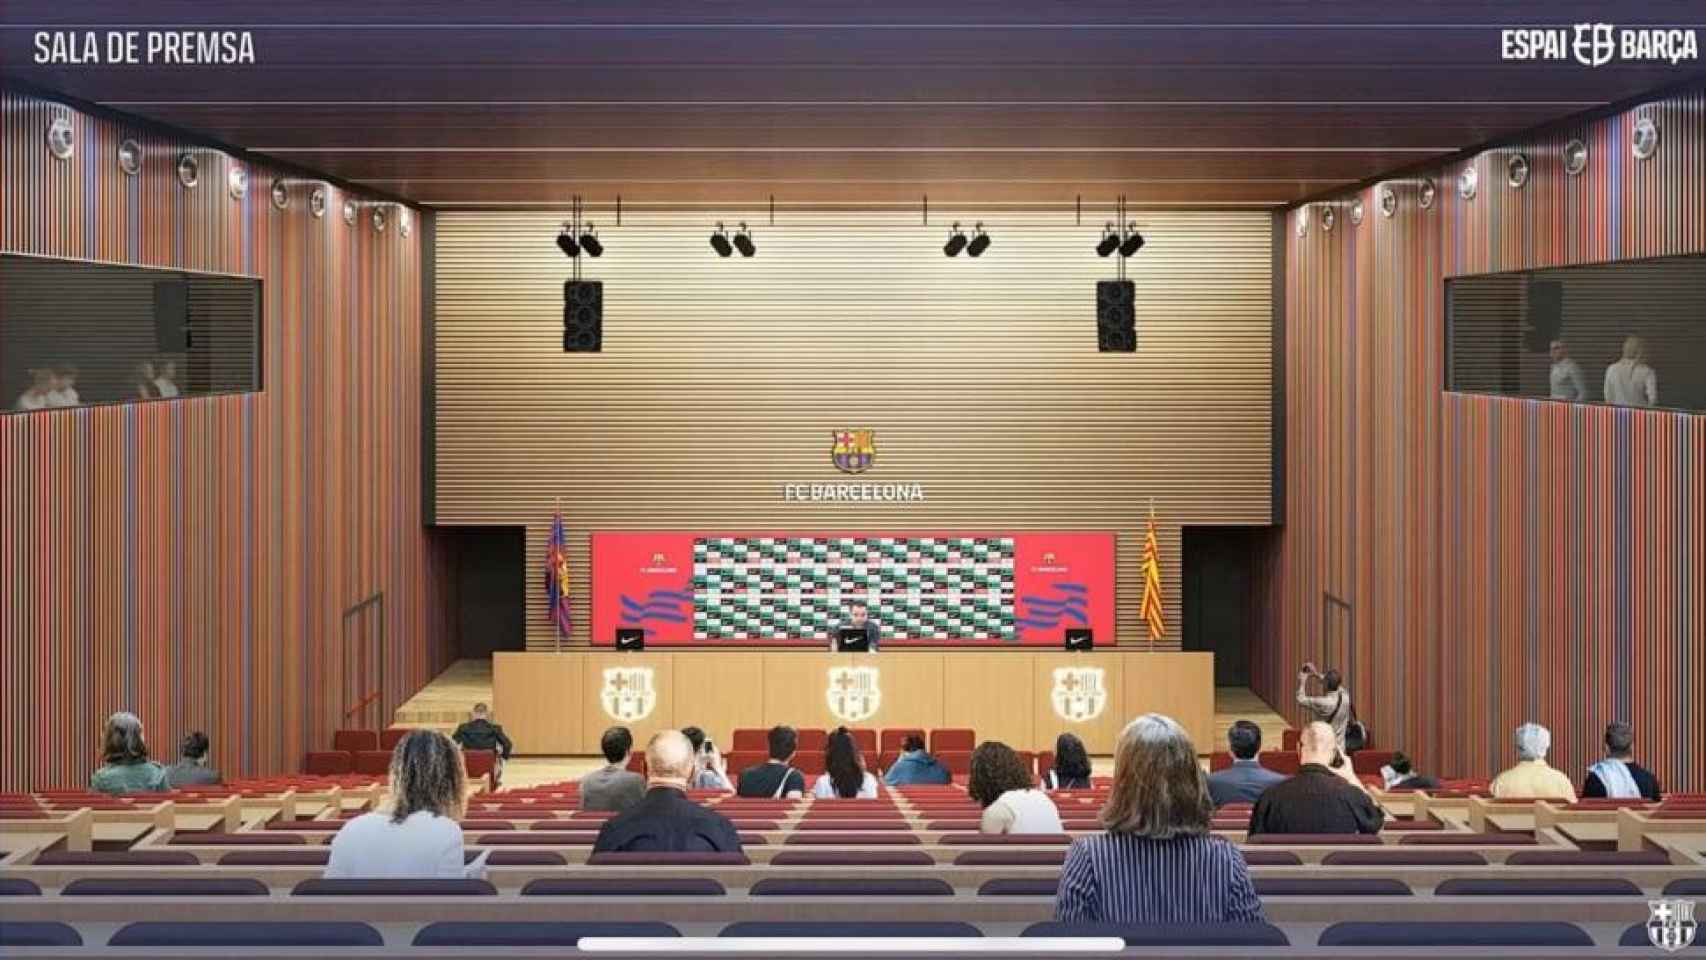 Sala de prensa del nuevo Camp Nou